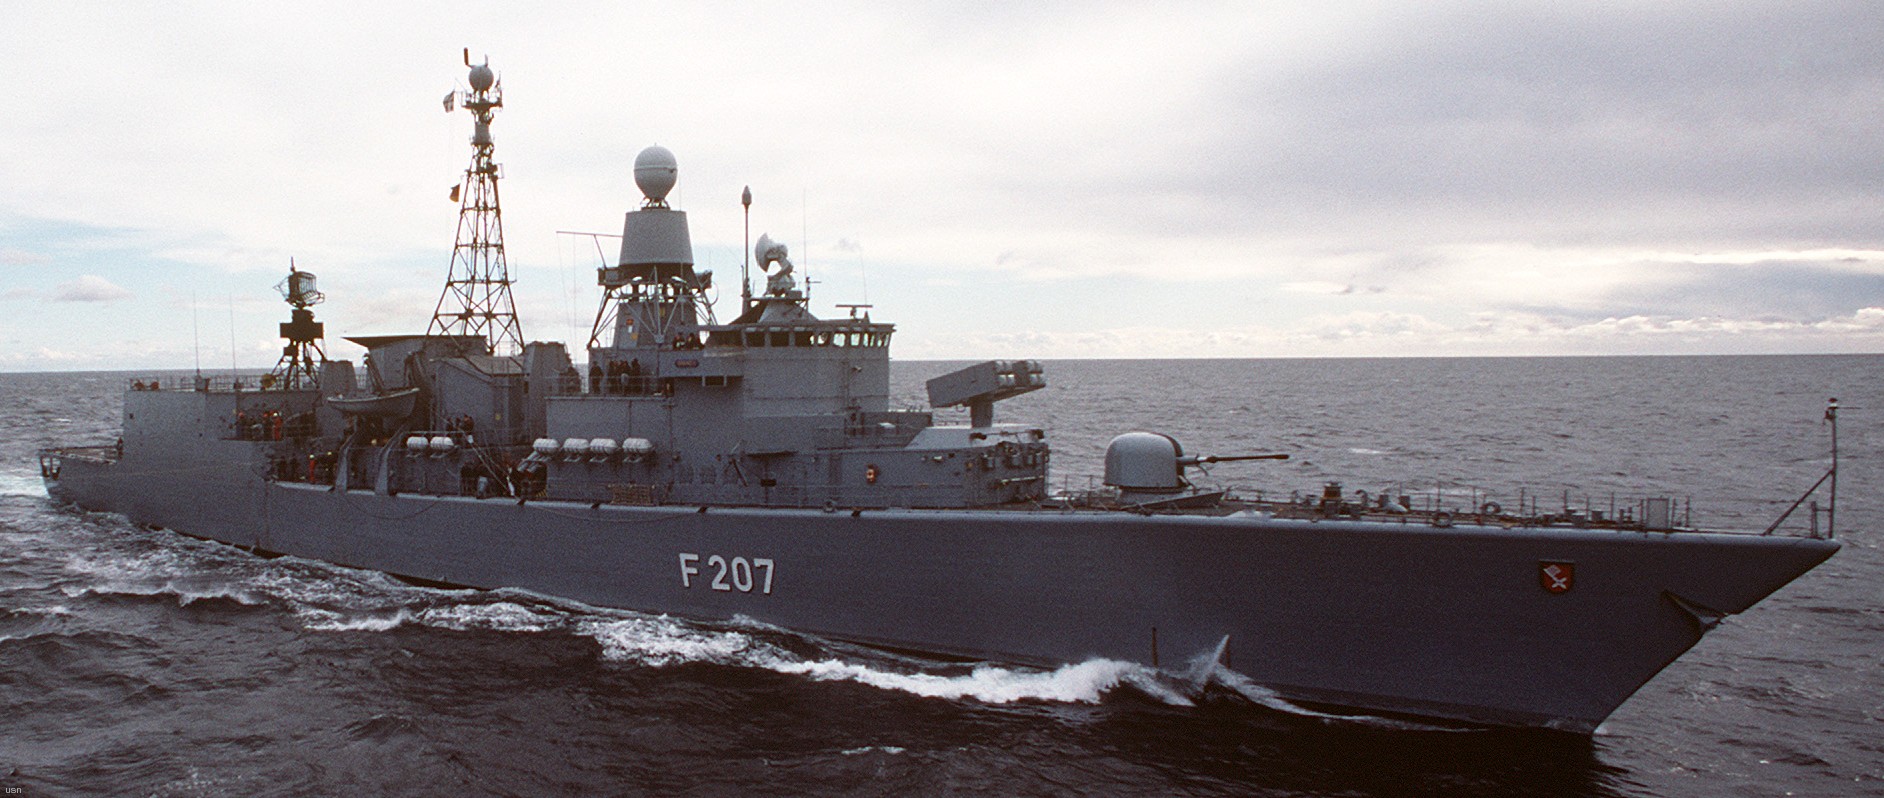 f-207 fgs bremen type 122 class frigate german navy 15